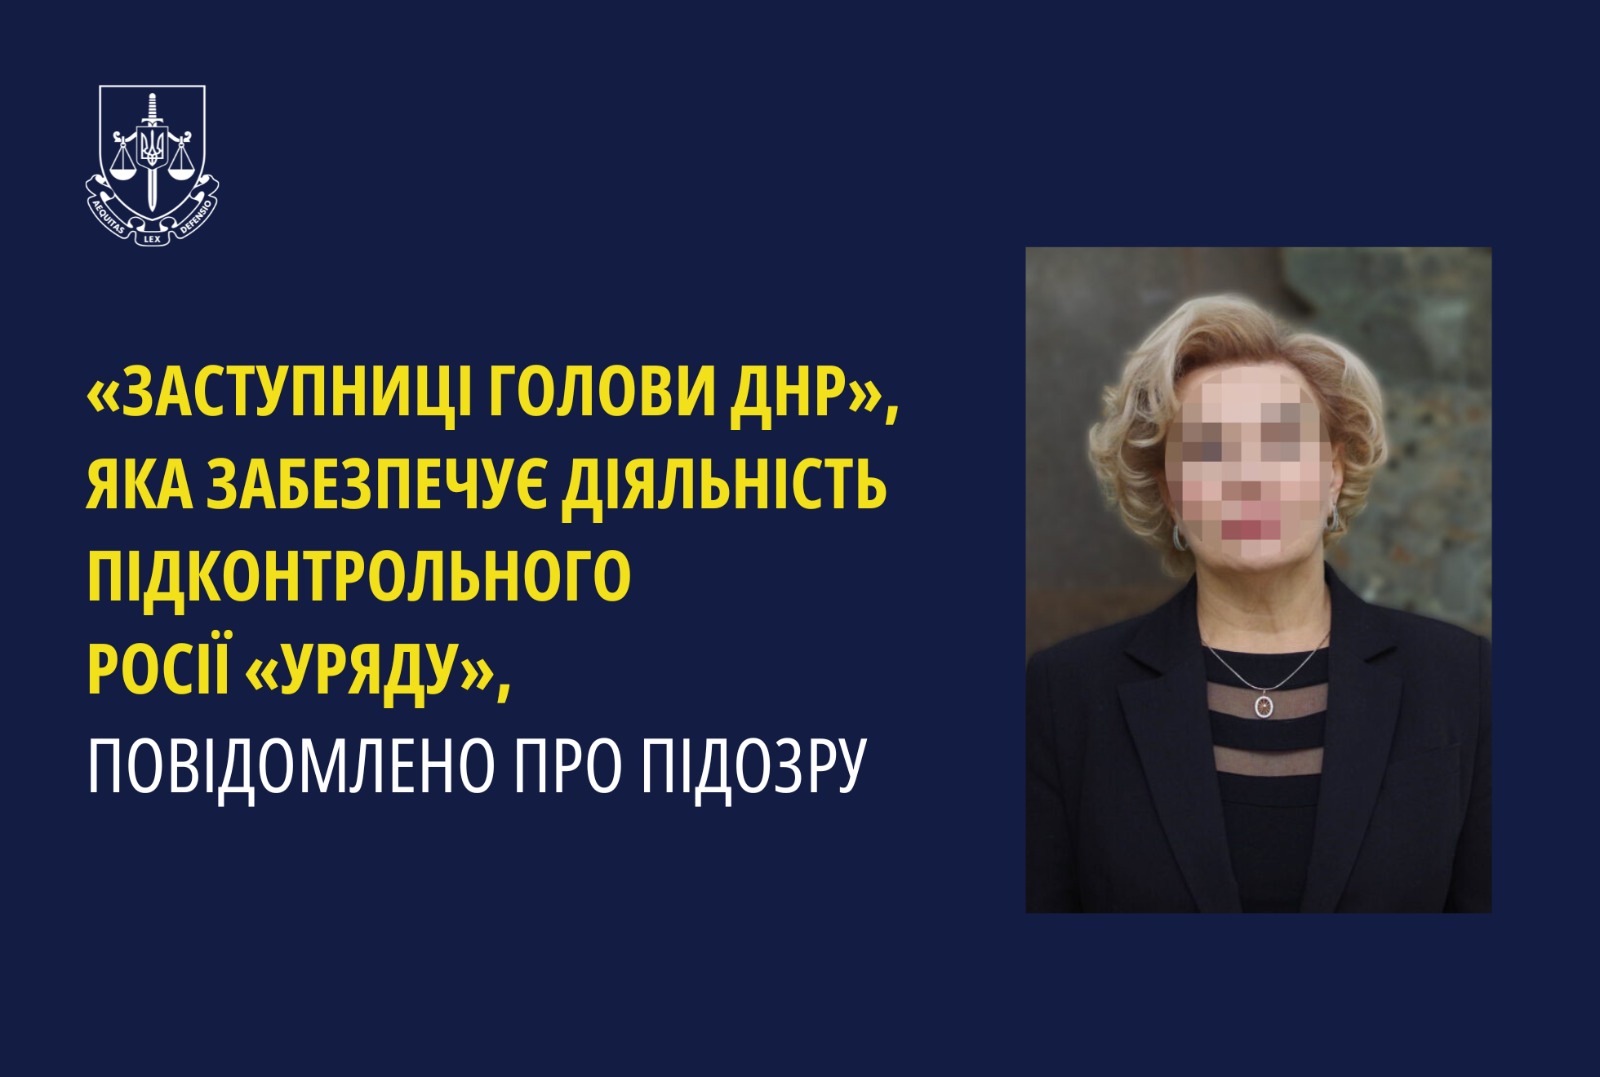 «Заступниці голови днр», яка забезпечує діяльність підконтрольного росії «уряду», повідомлено про підозру